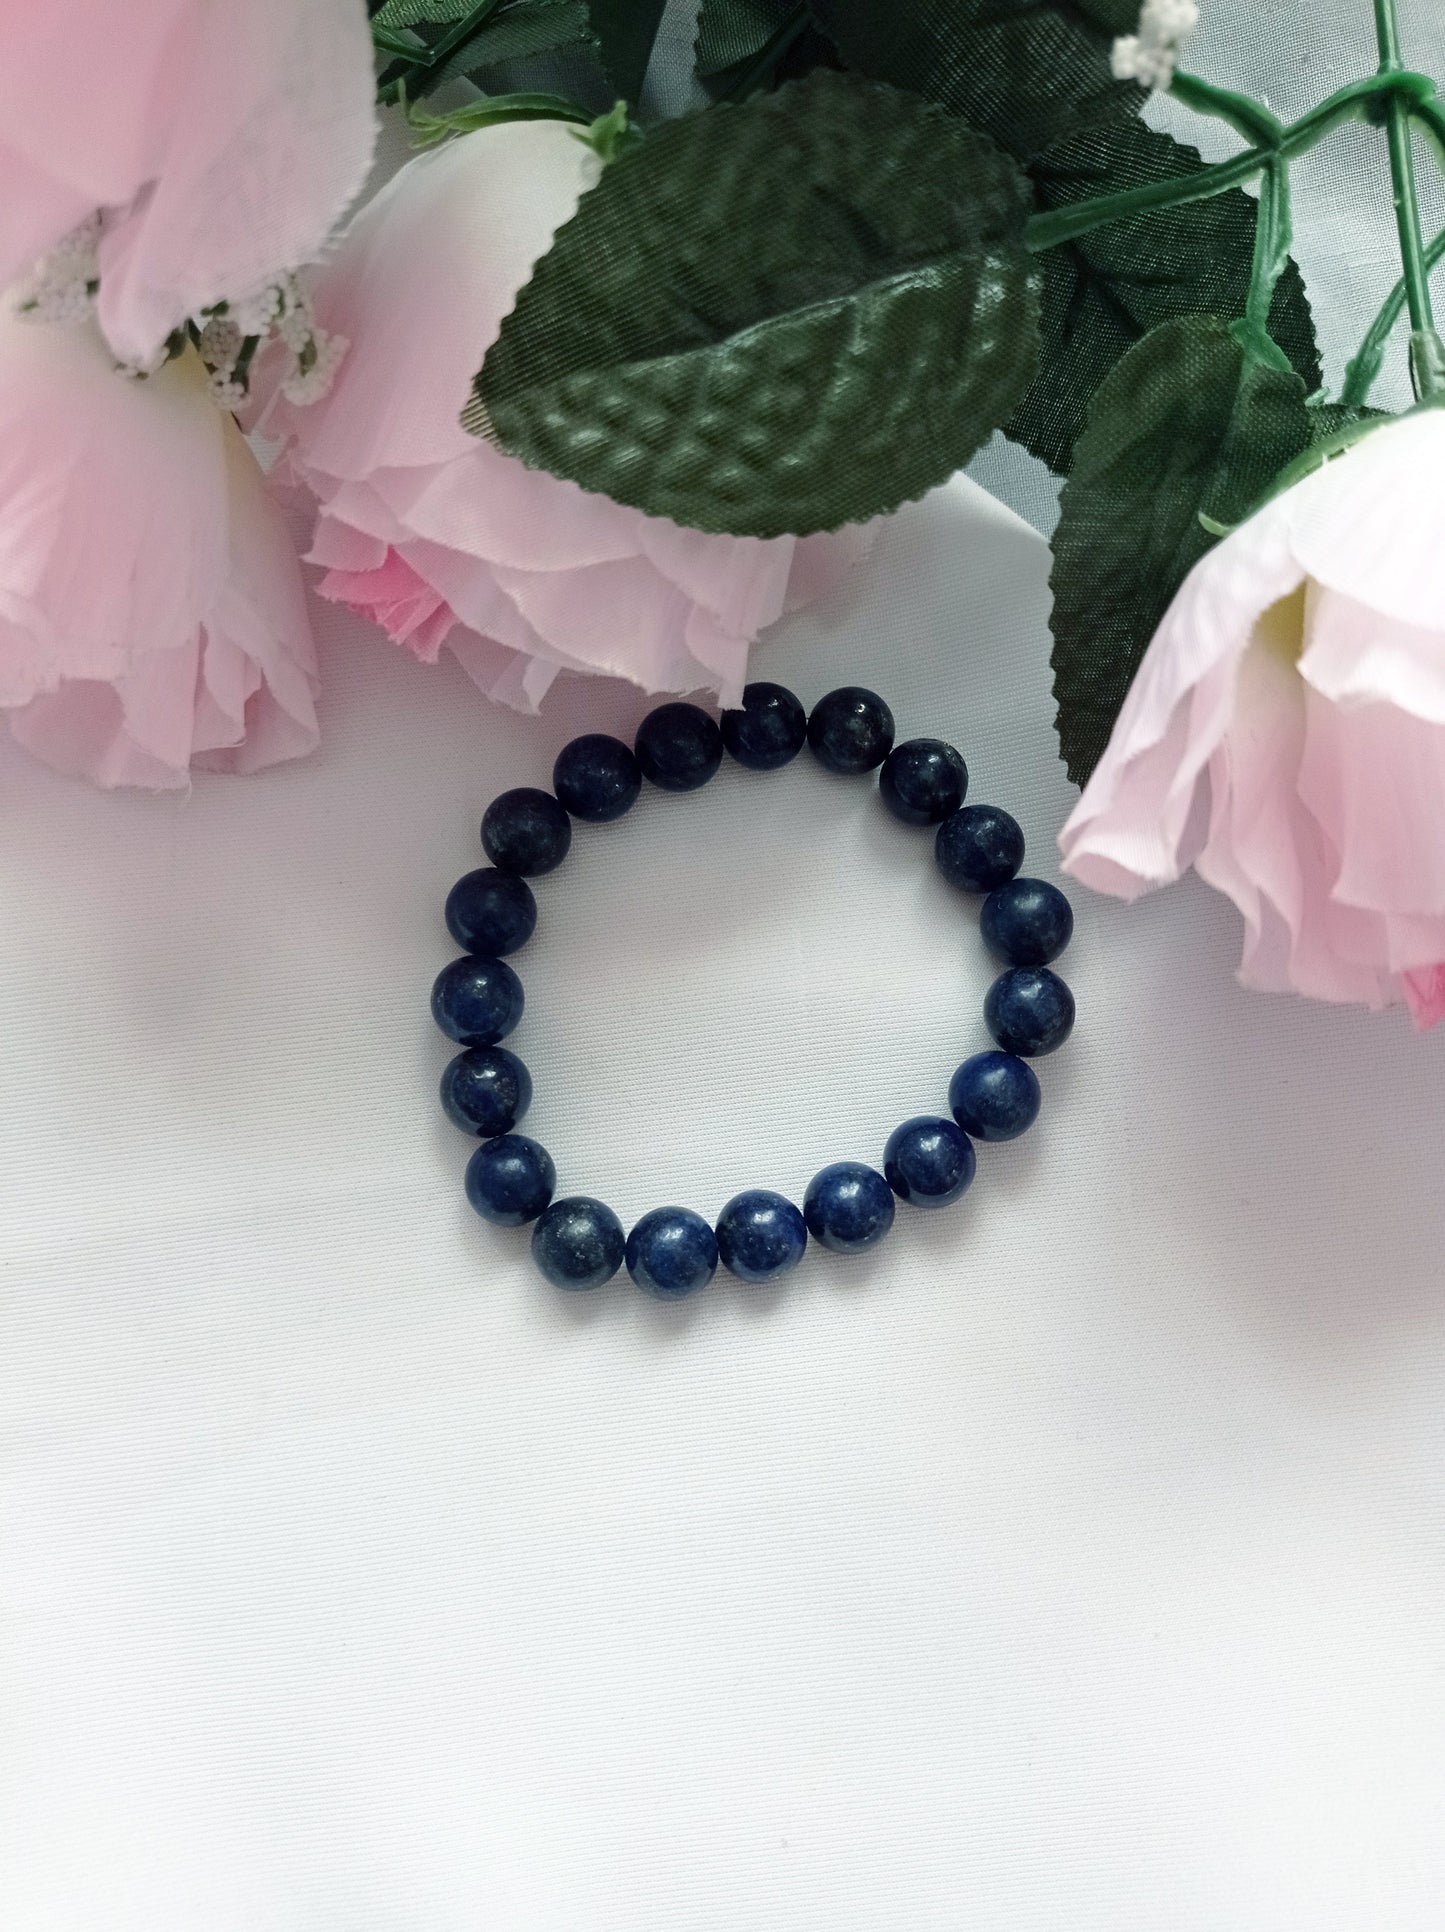 Lapis Lazuli Bracelet, Lapis Lazuli Stretch Bracelet | by nlanlaVictory-8